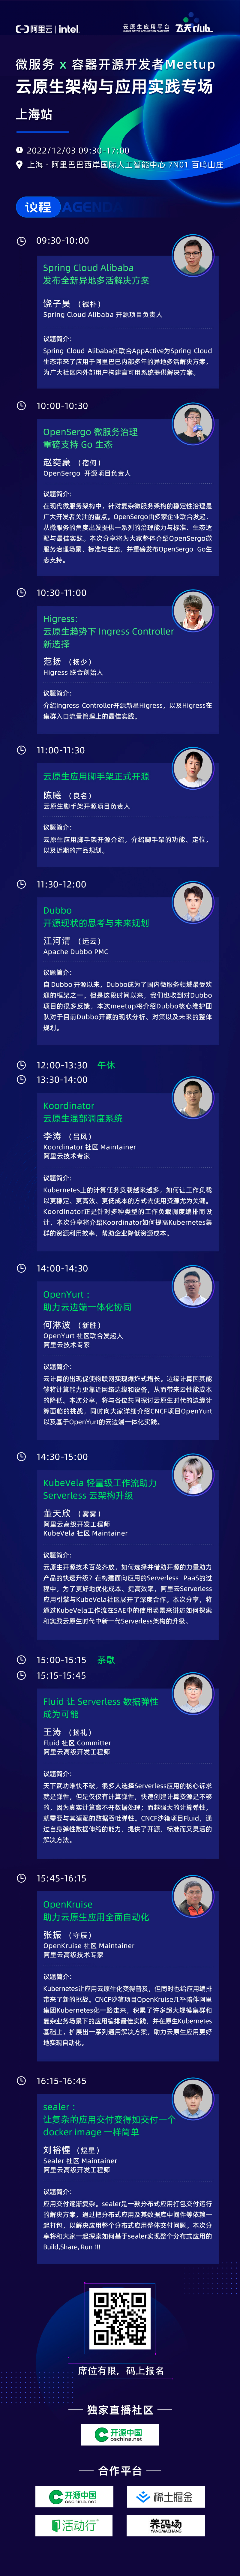 上海 Meetup | 一键获取 11 大云原生热门开源项目技术分享入场券_微服务_12